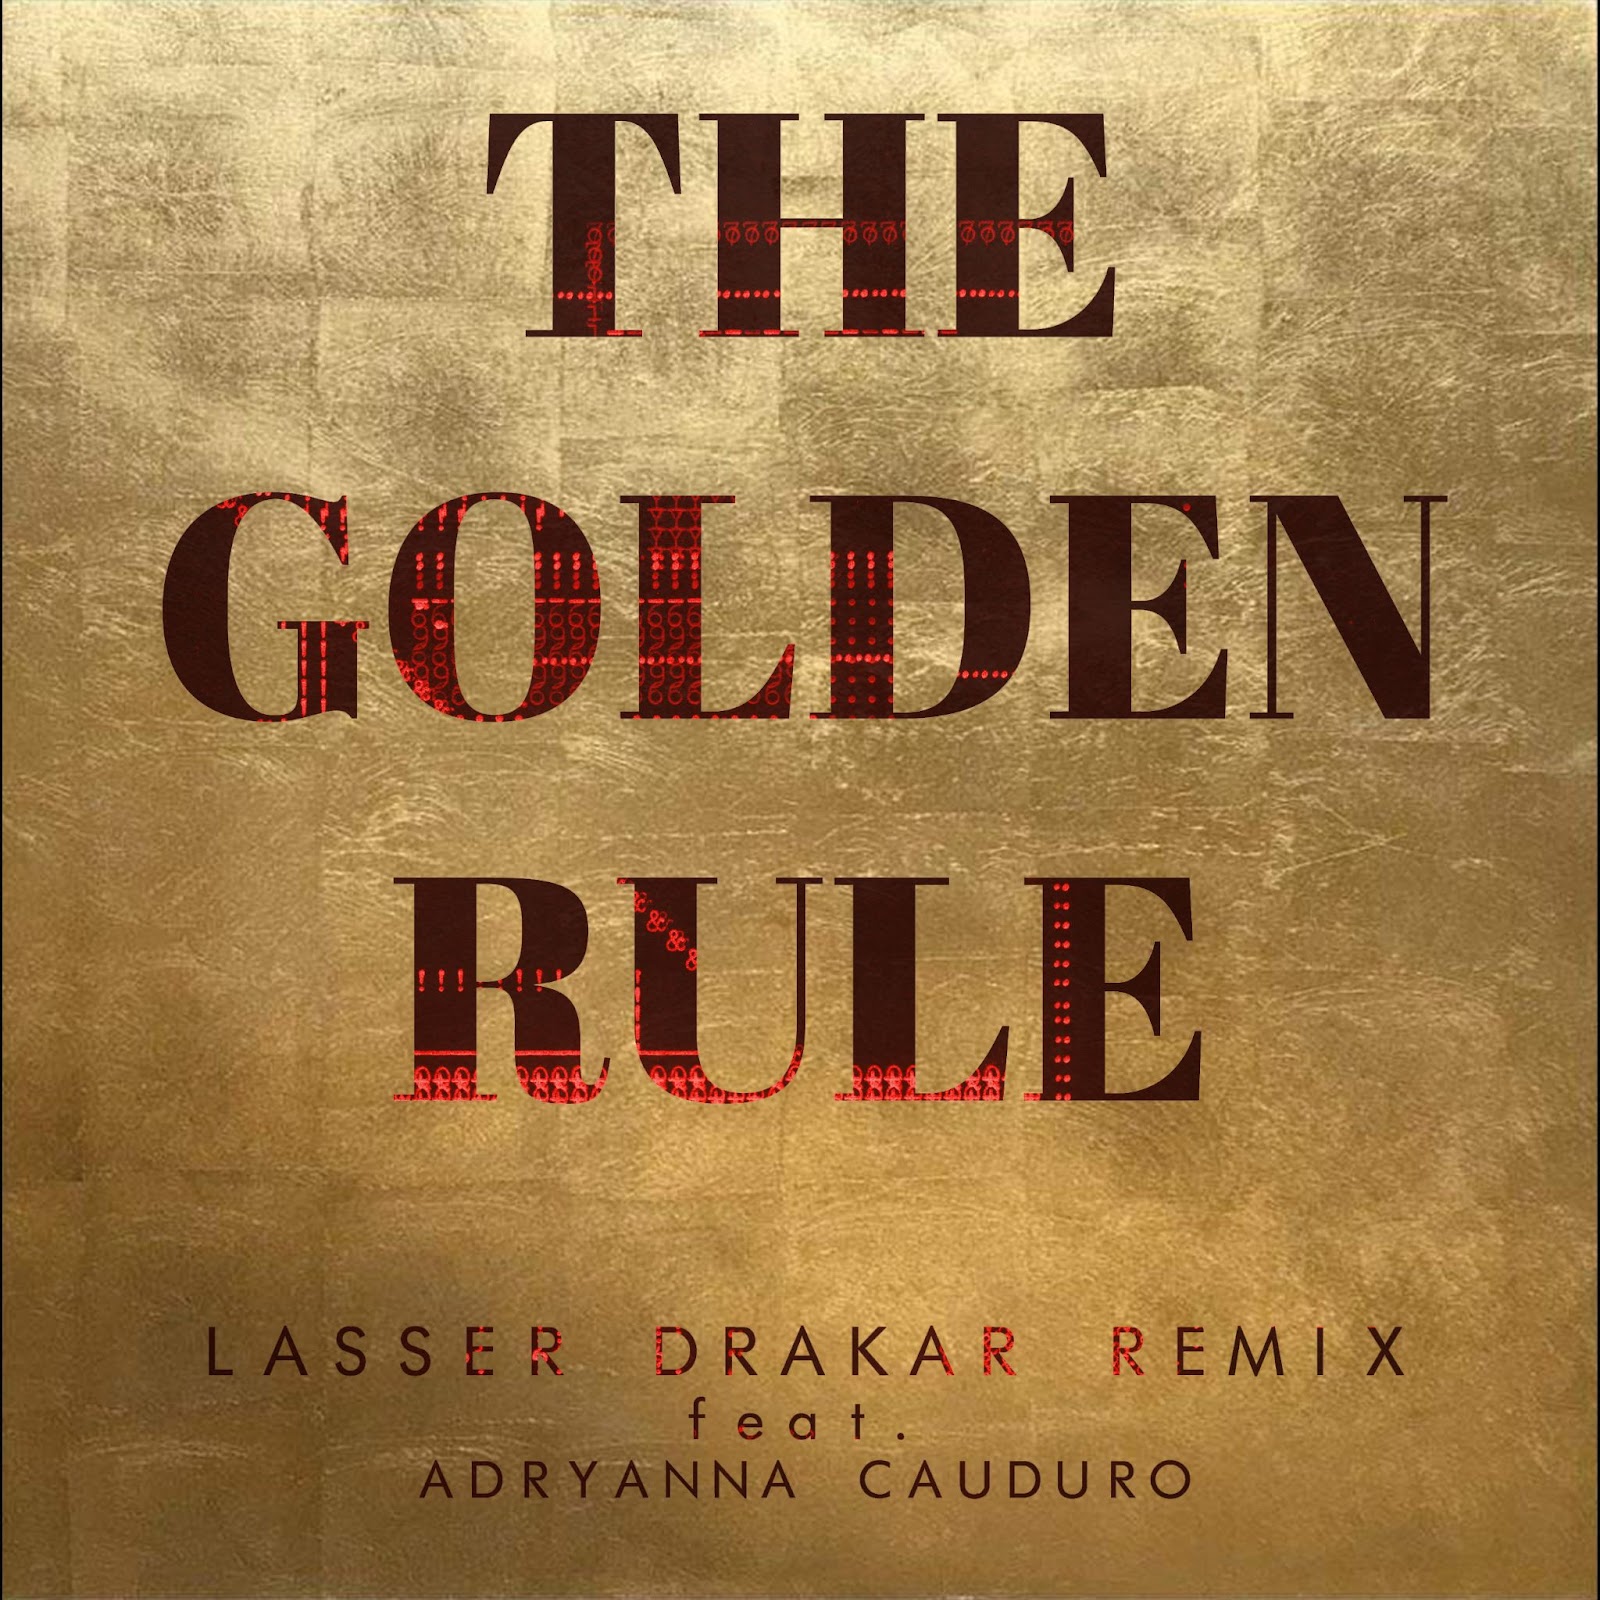 Escucha el remix de Lasser Drakar a “Golden Rule” de Sanchez Dub 